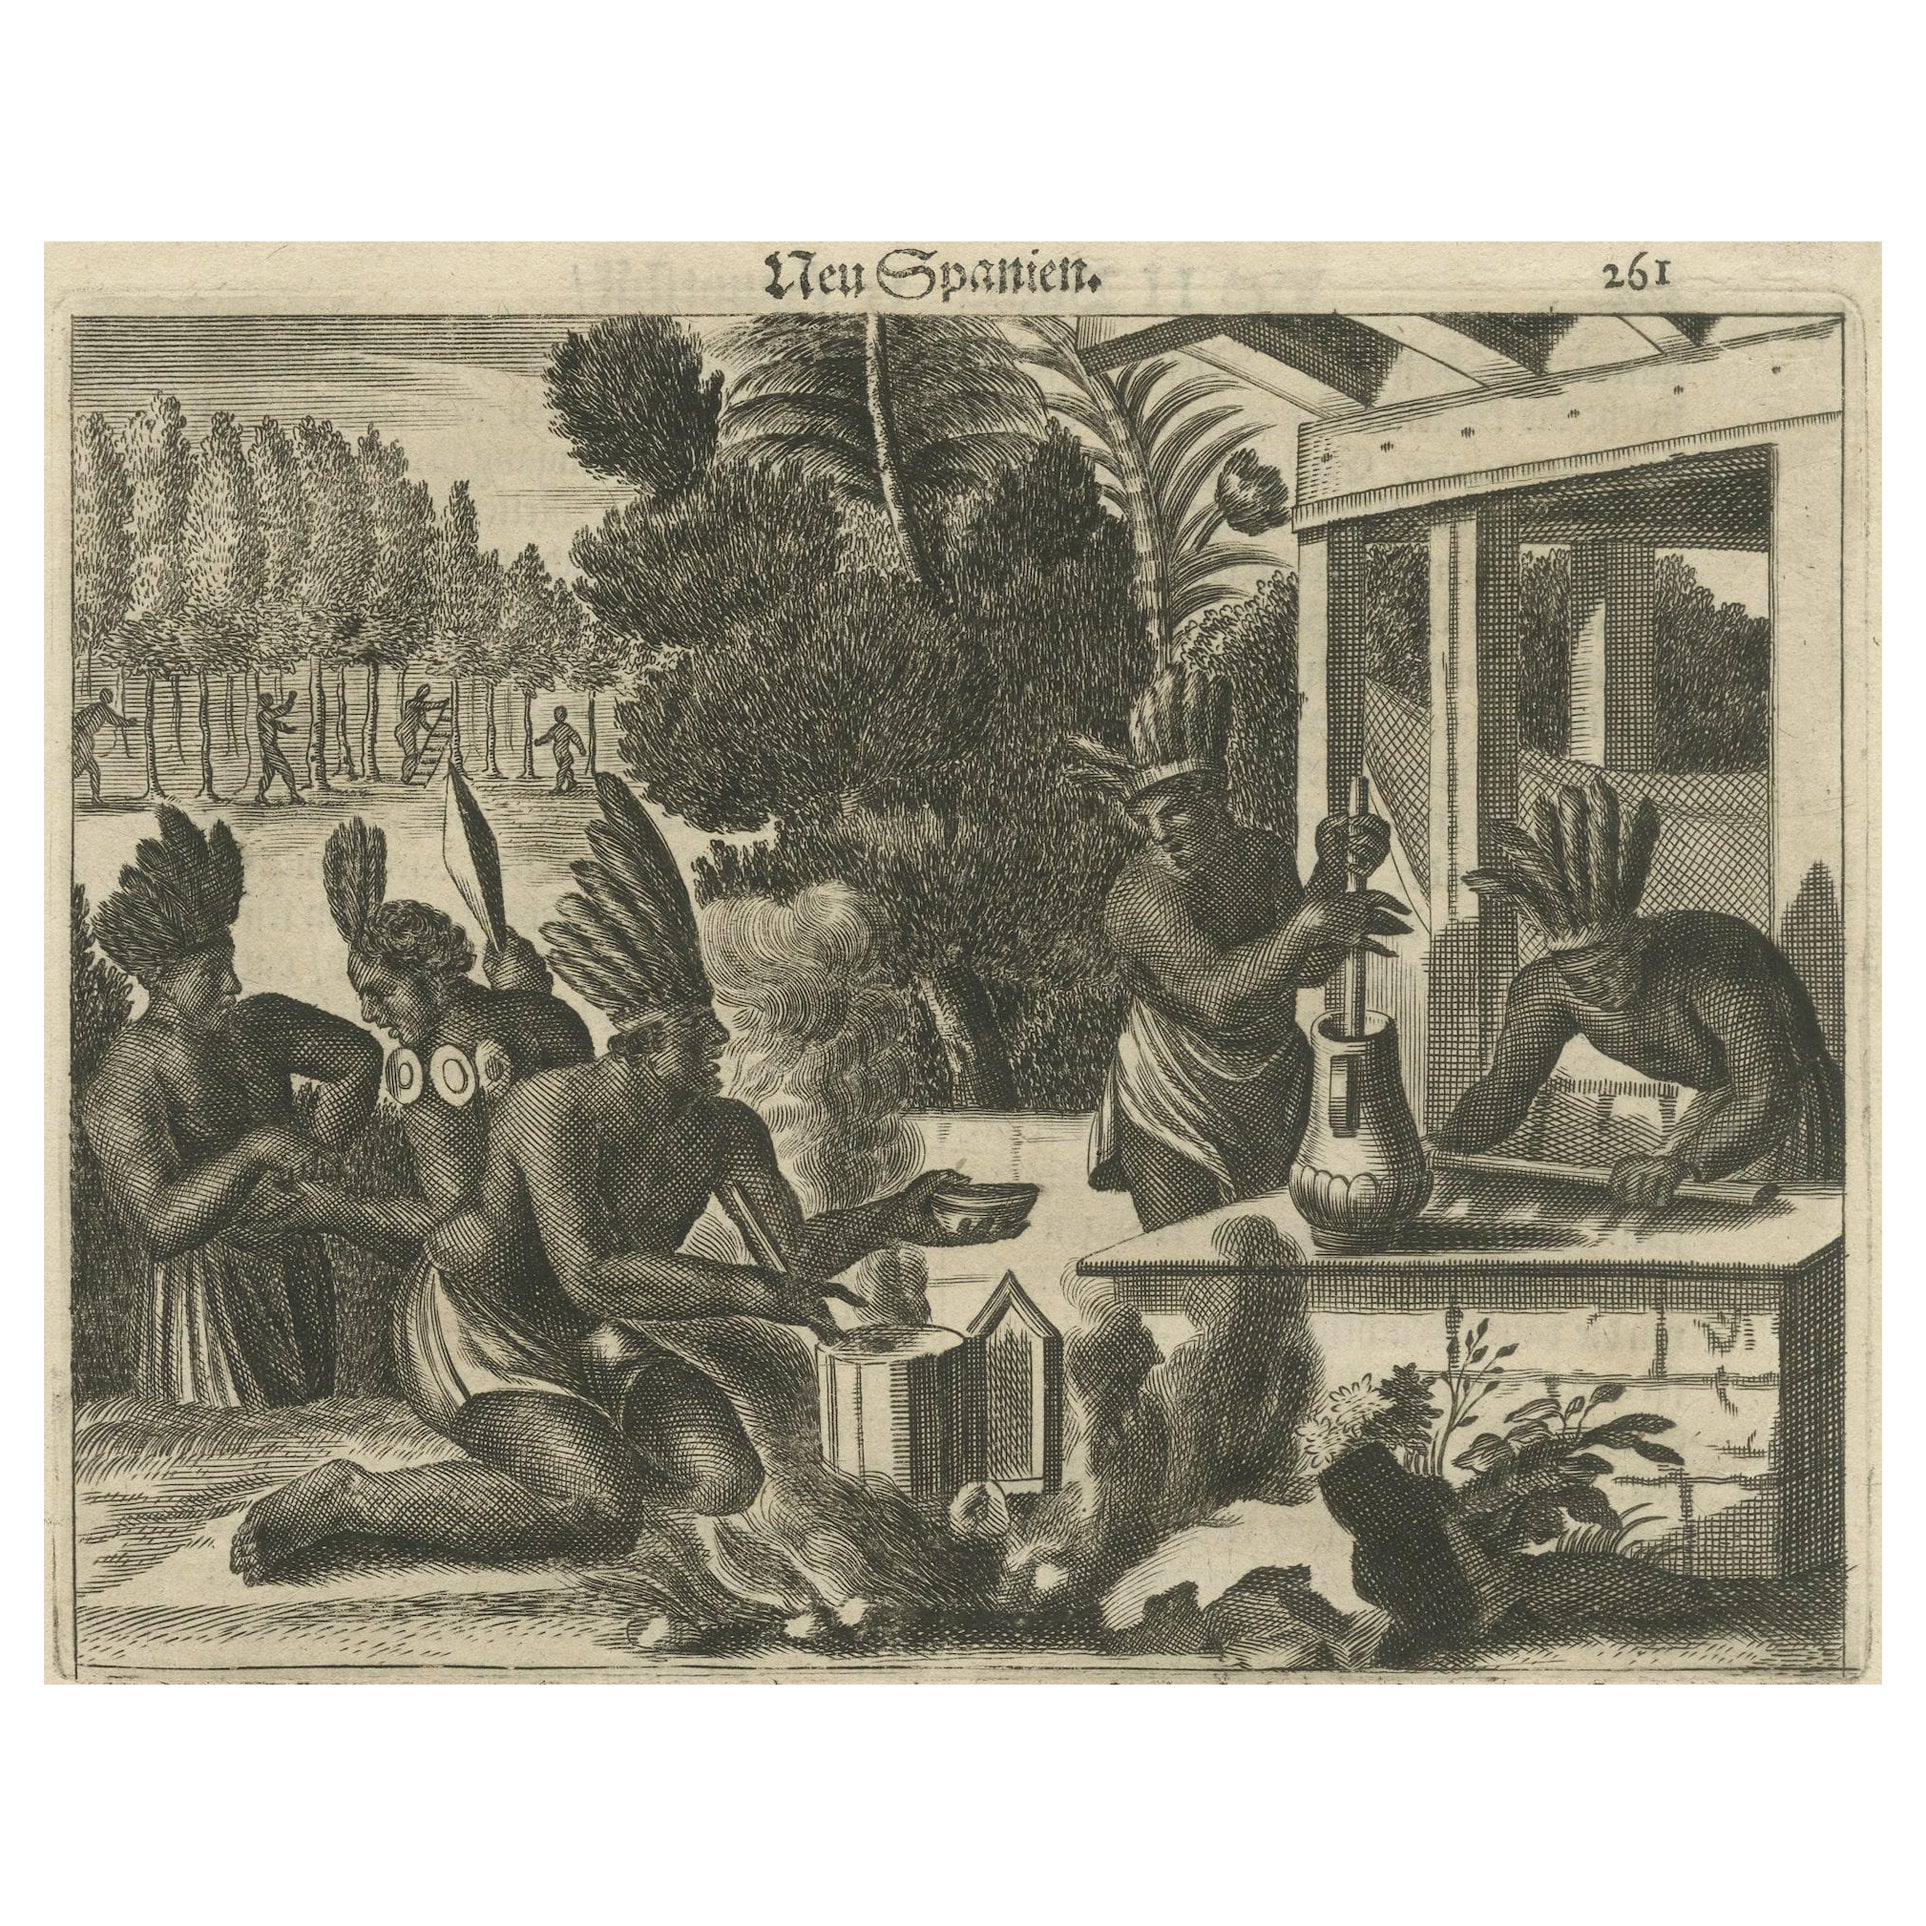 Kupferstich des täglichen Lebens in Neuengland im 17. Jahrhundert, 1673, Kupferstich